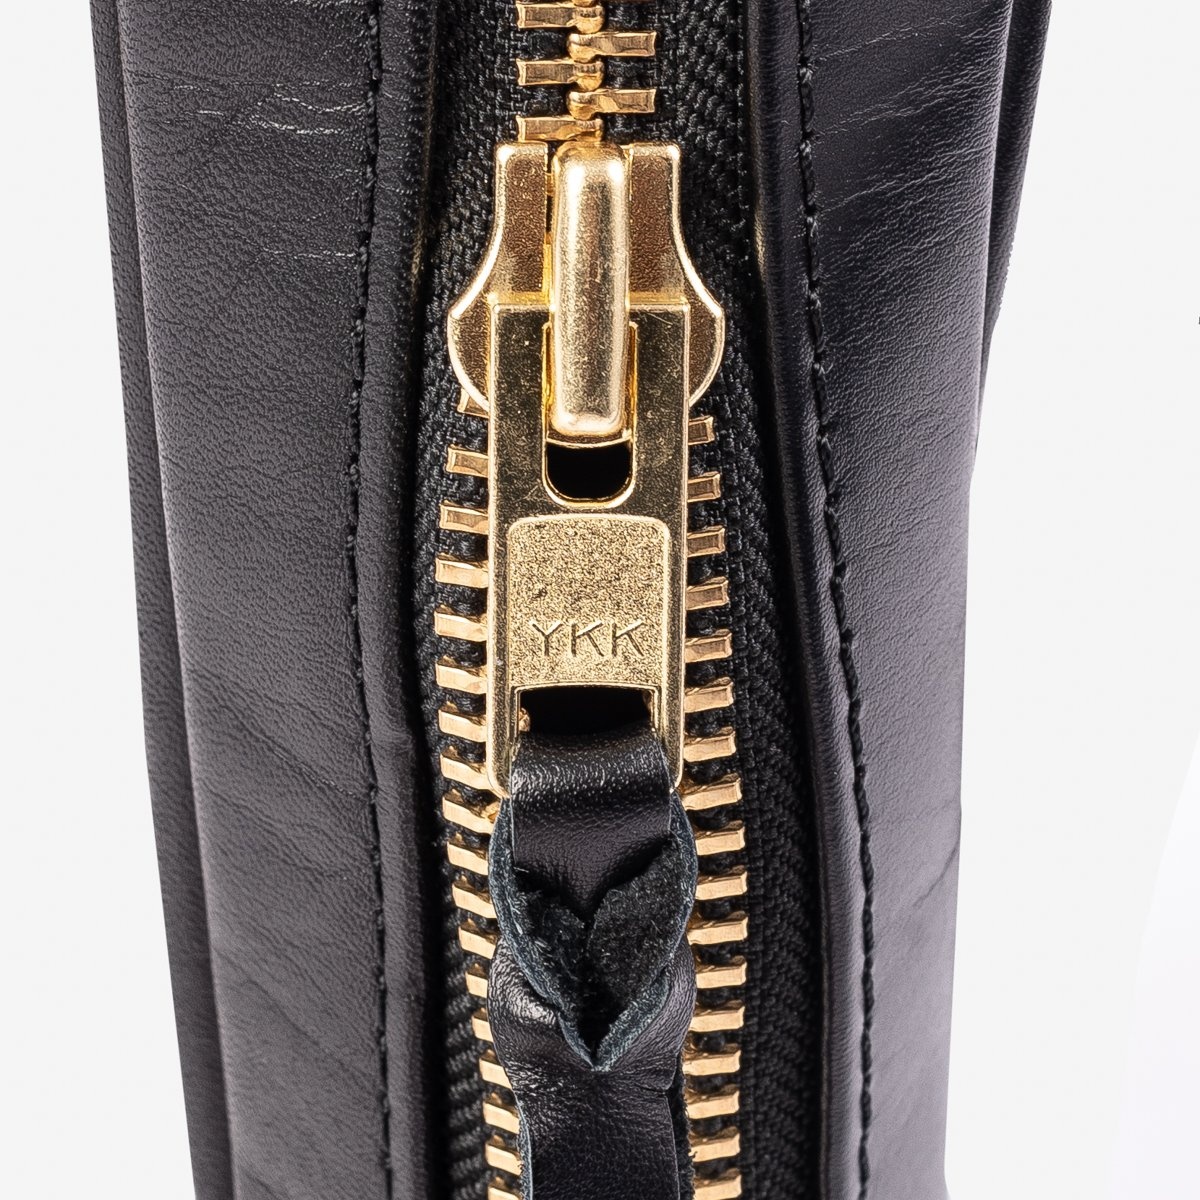 IHE-40-BLK Rectangular Leather Diamond Stitched Shoulder Bag - Black - 12